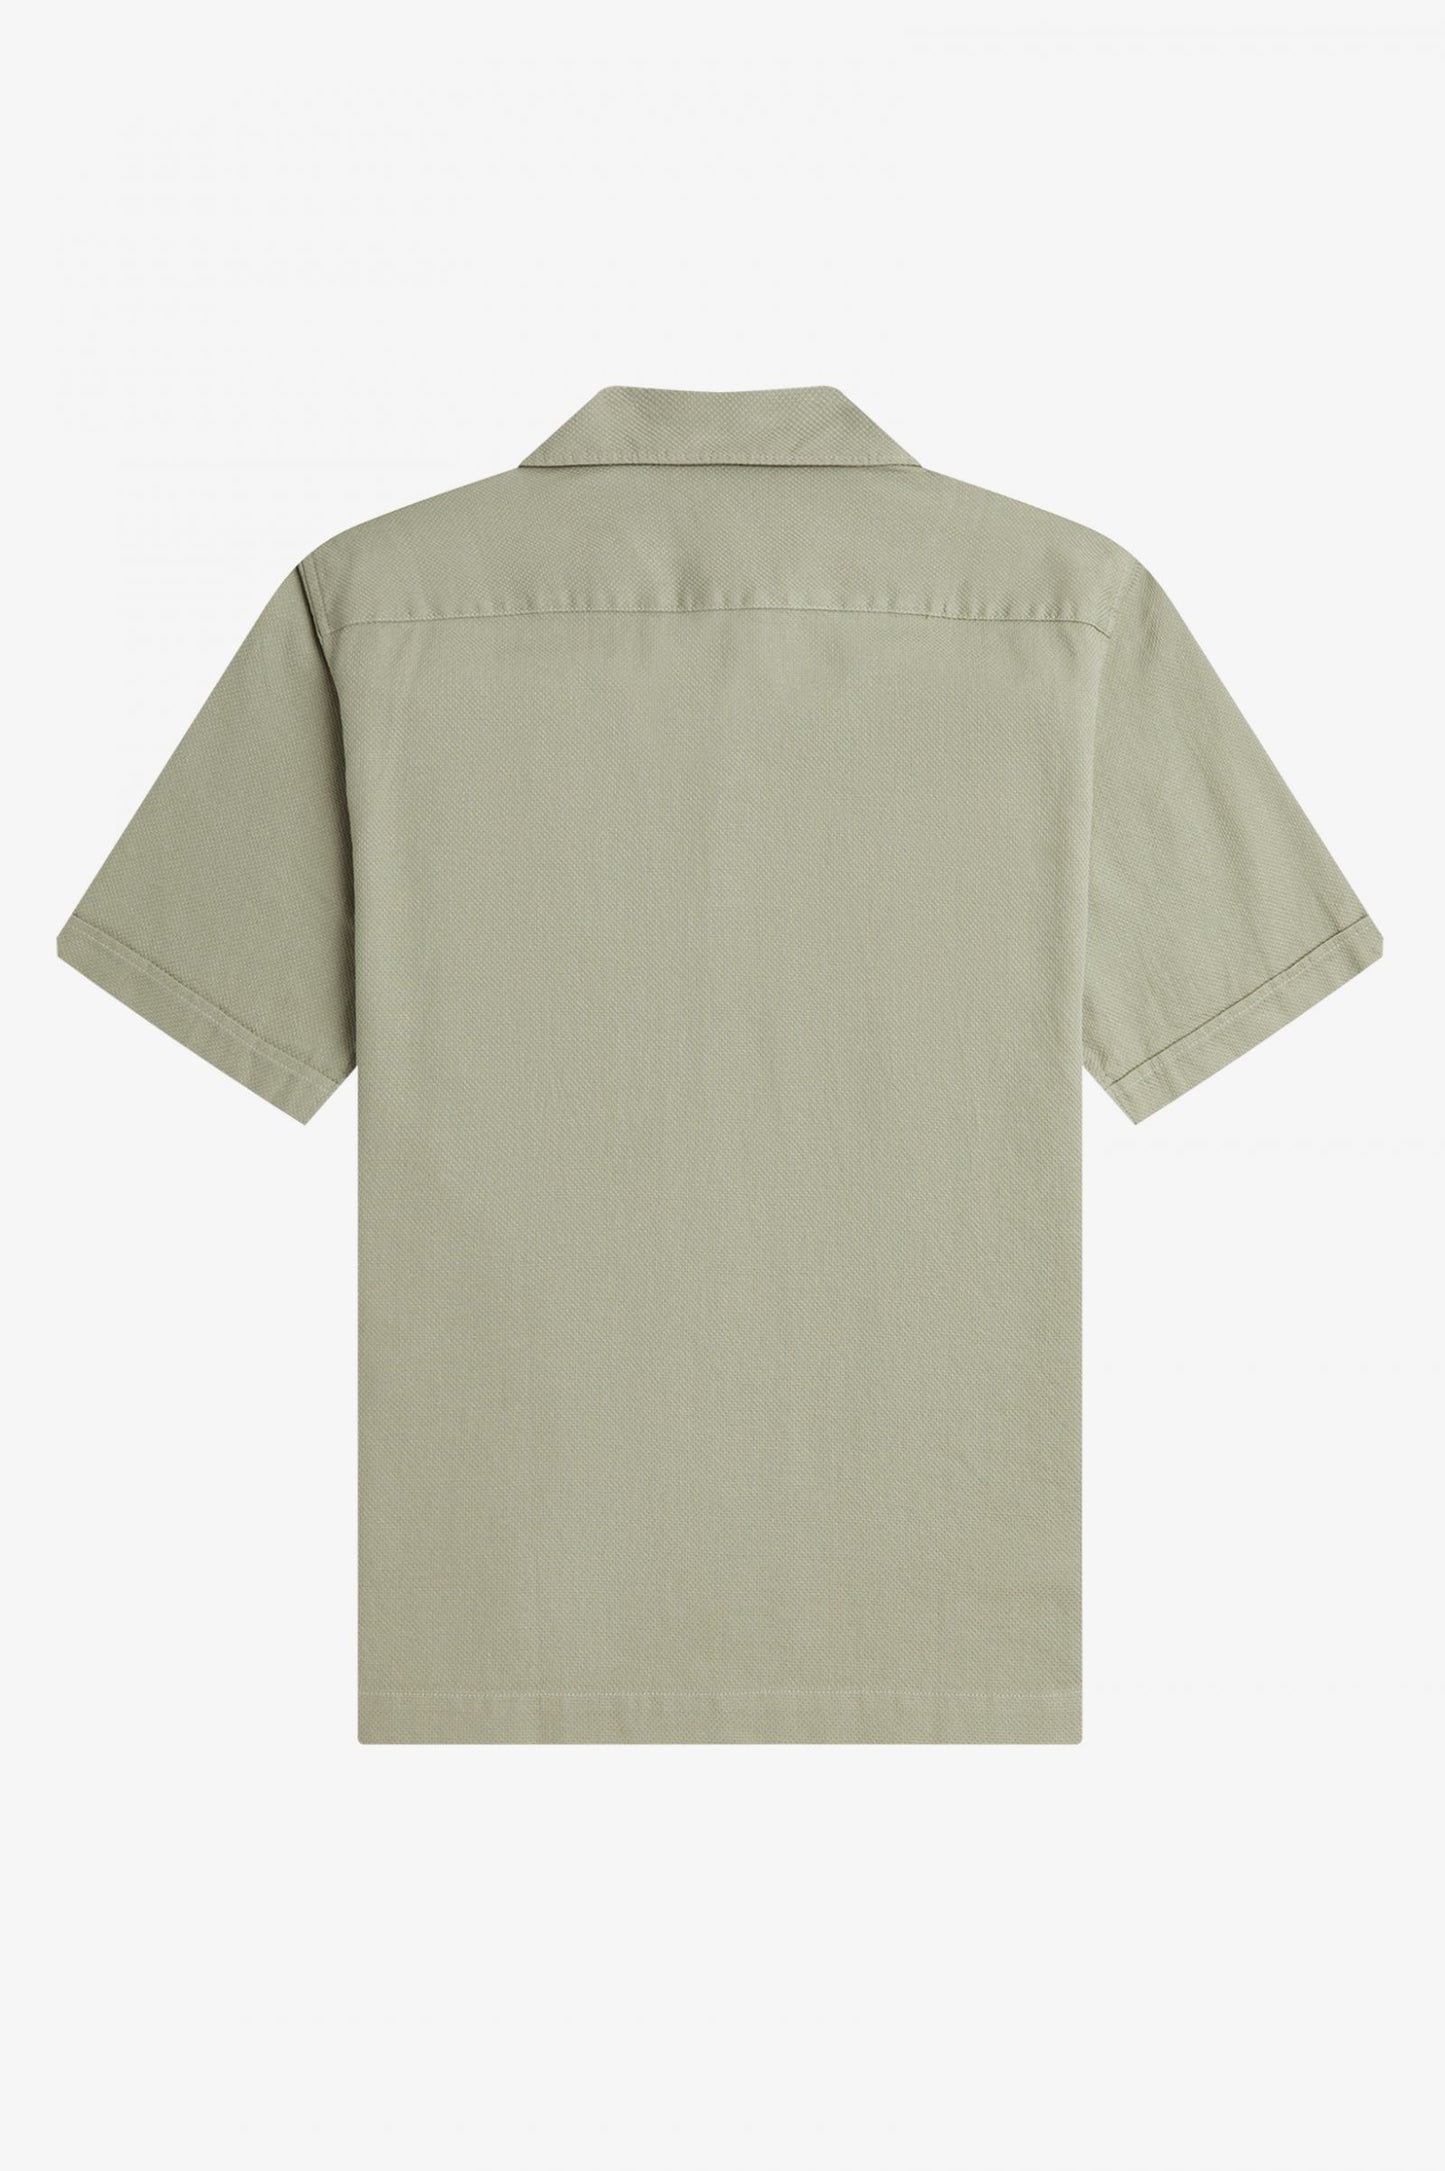 Woven Pique Short Sleeve Shirt